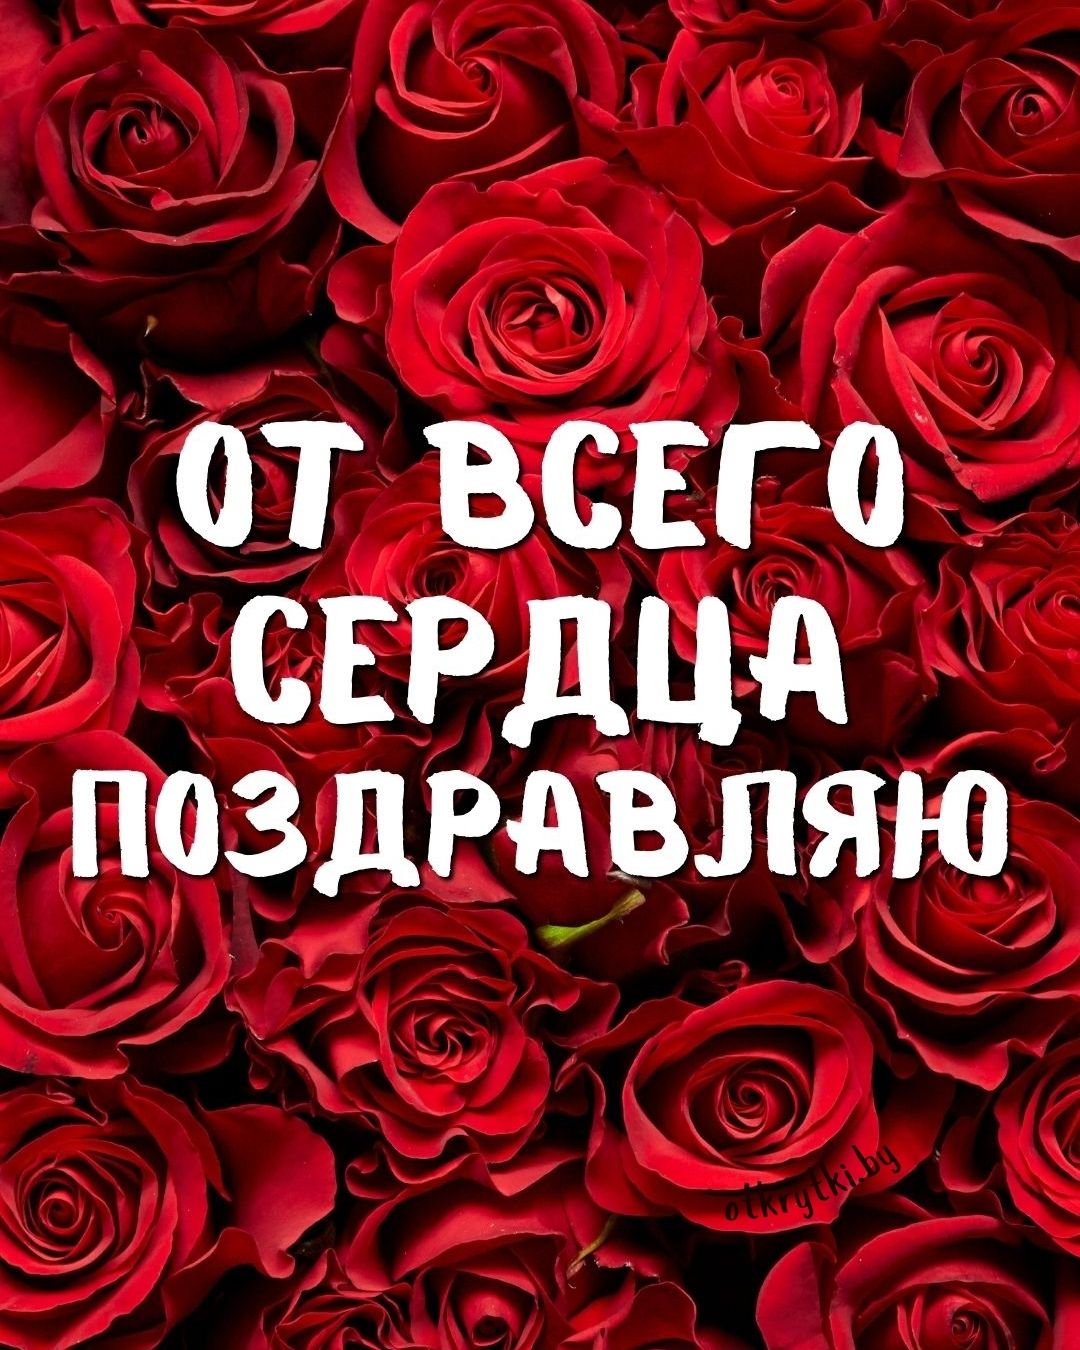 Картинка с розами поздравляю от всего сердца